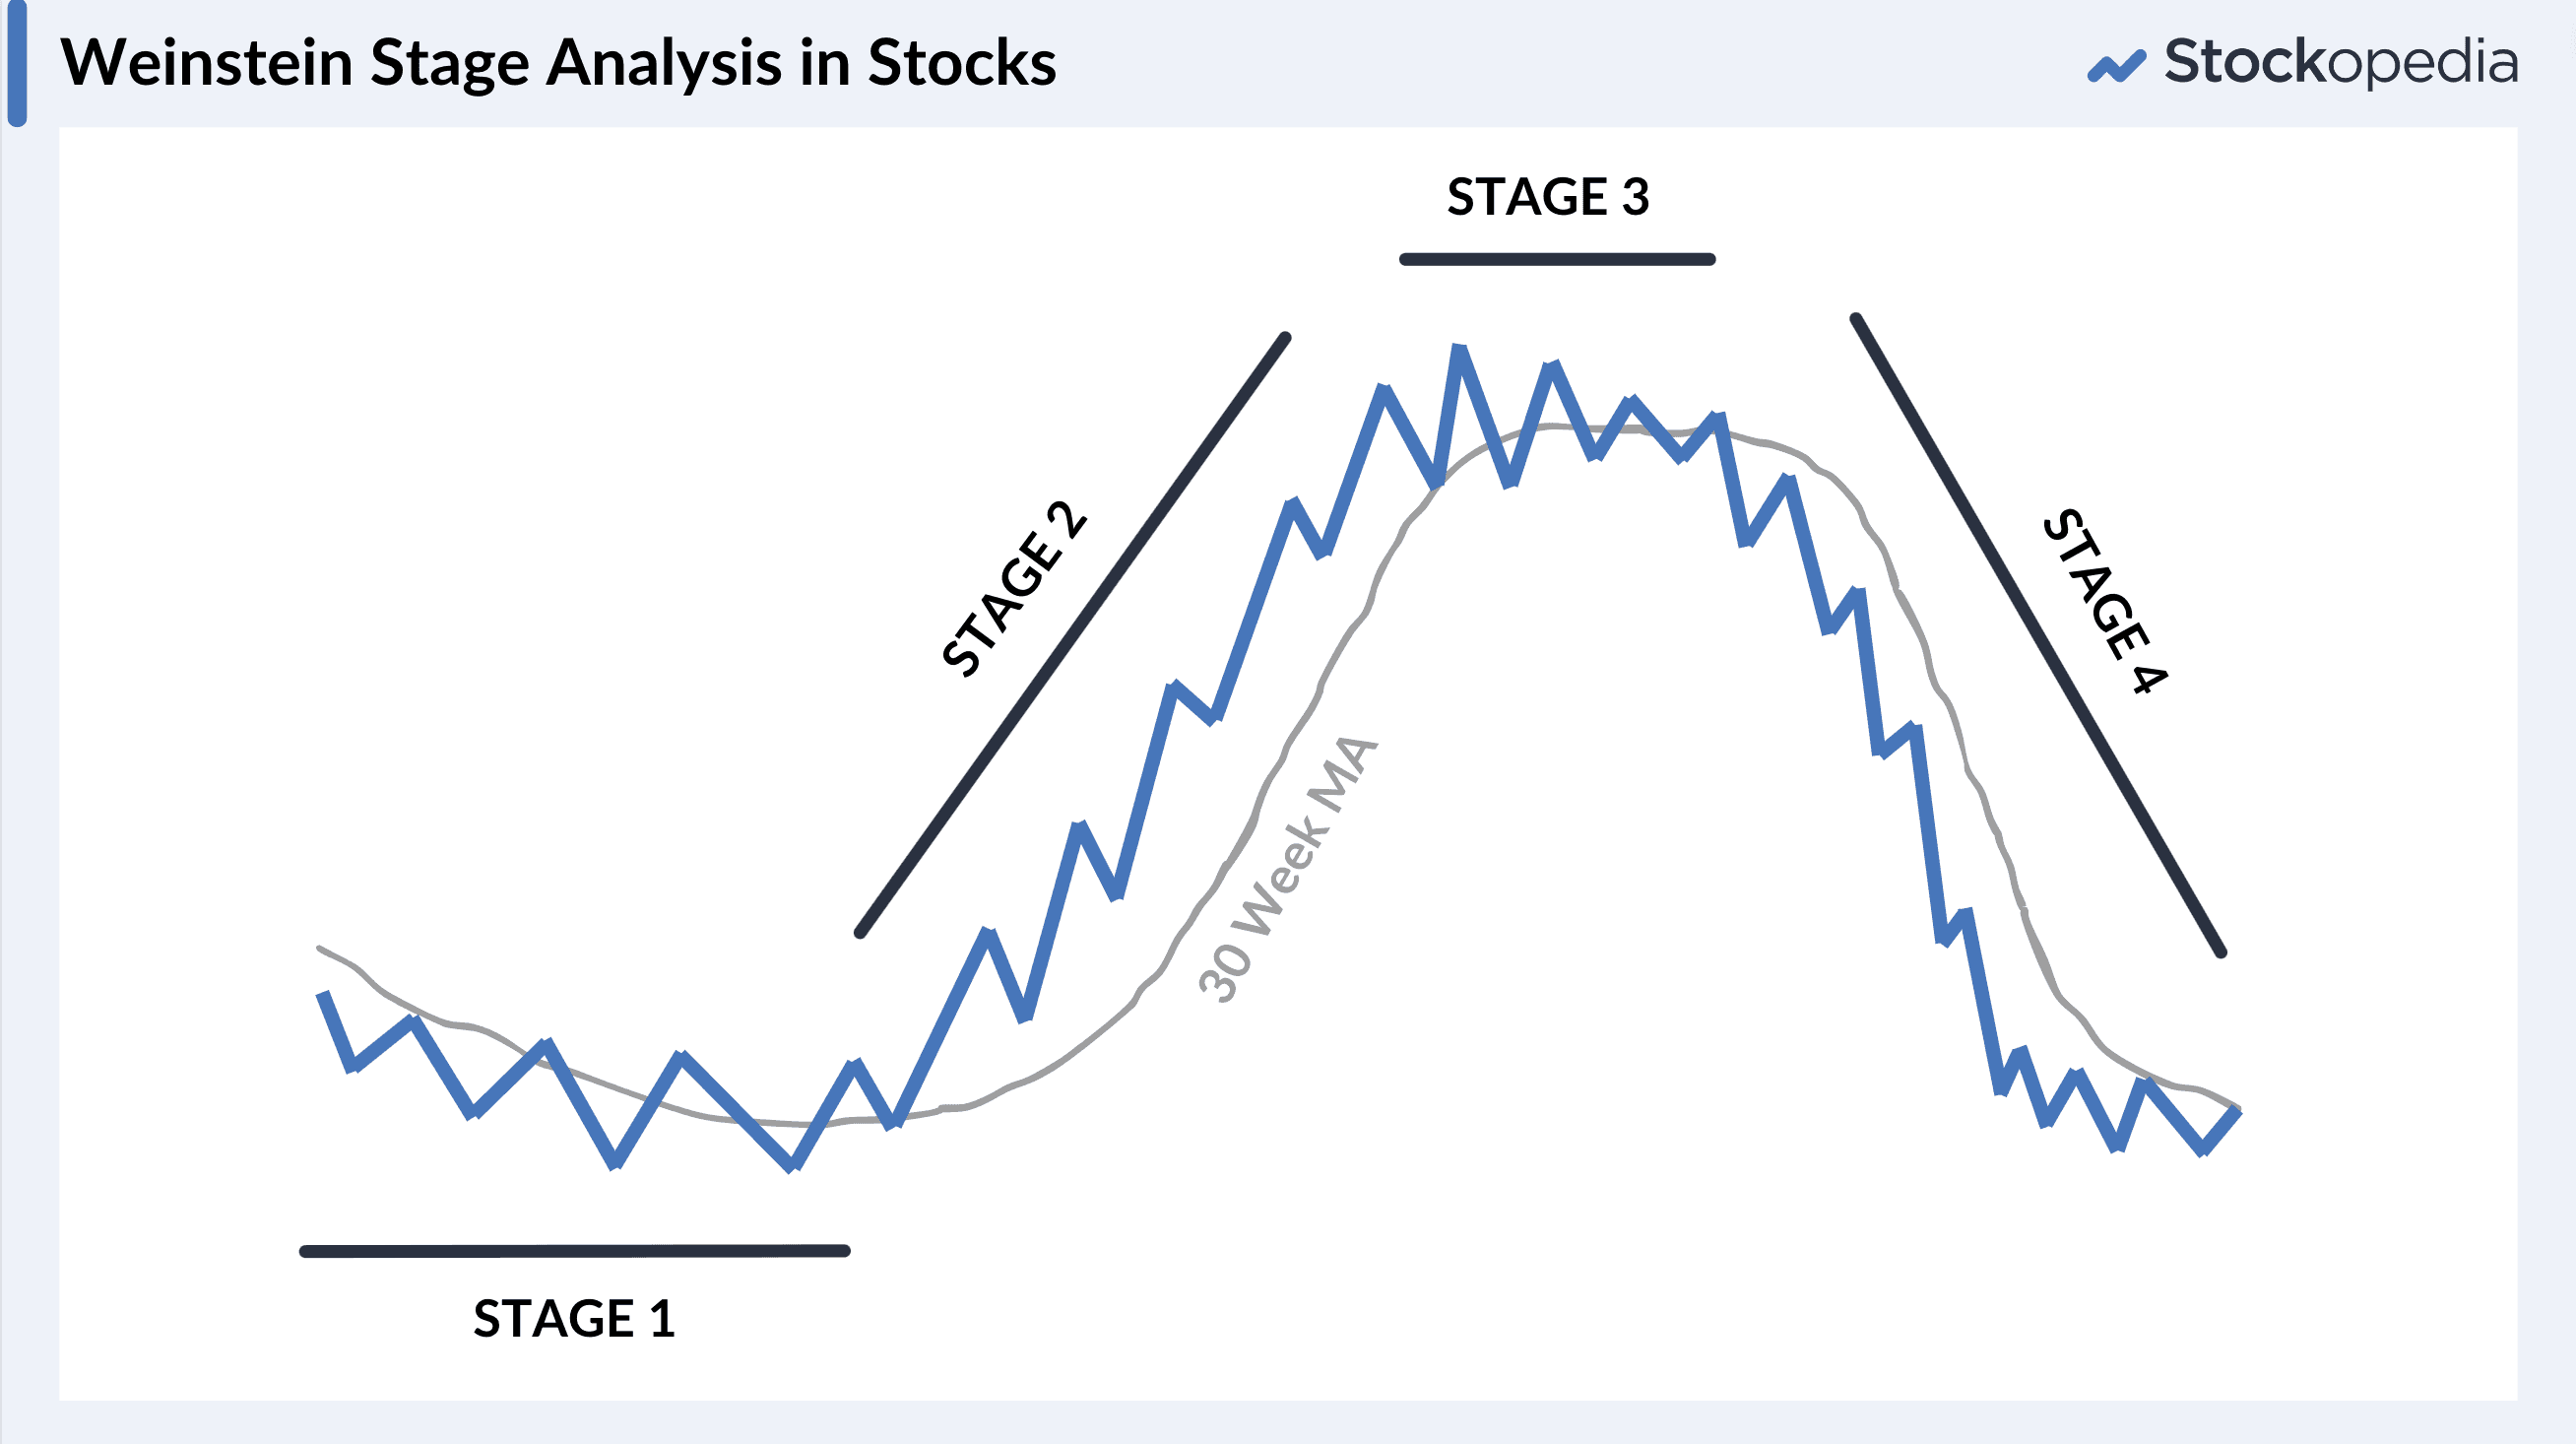 Graphic - Weinstein Stage Analysis in Stocks